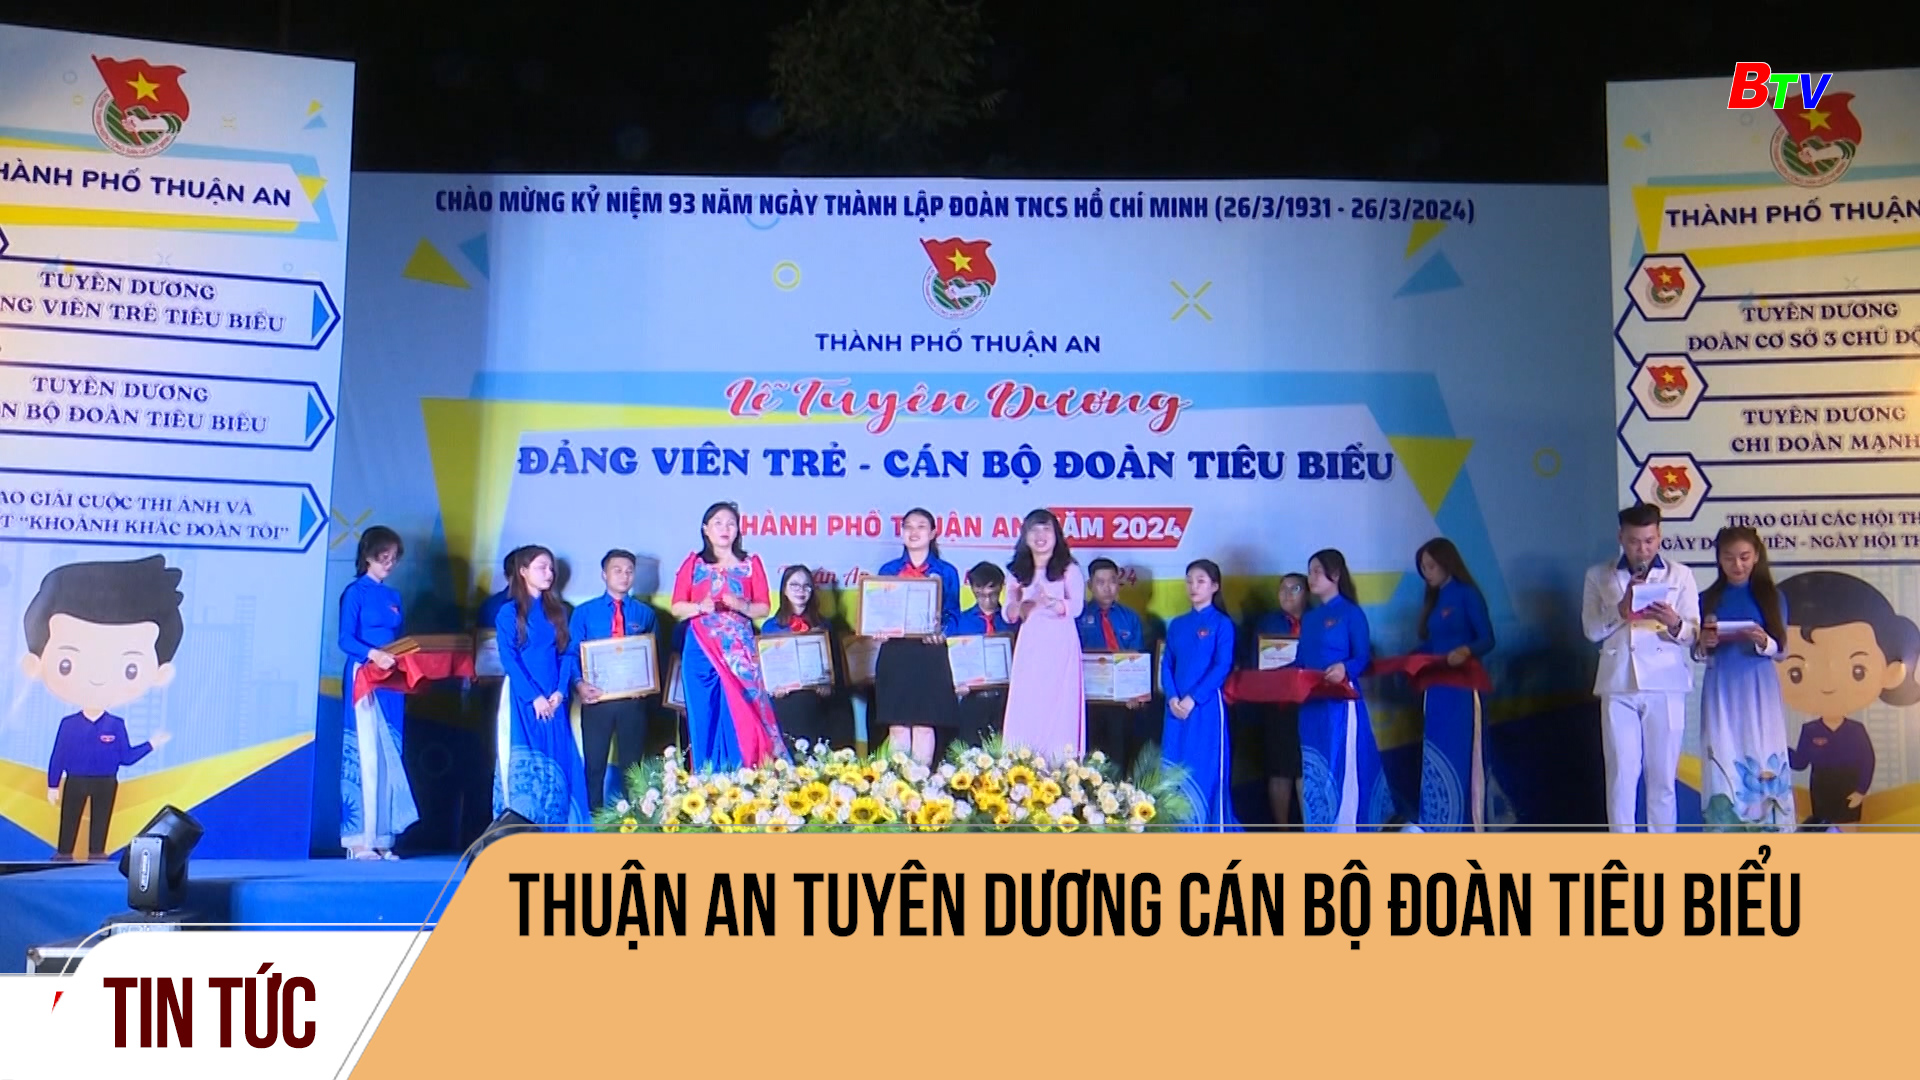 Thuận An tuyên dương cán bộ đoàn tiêu biểu